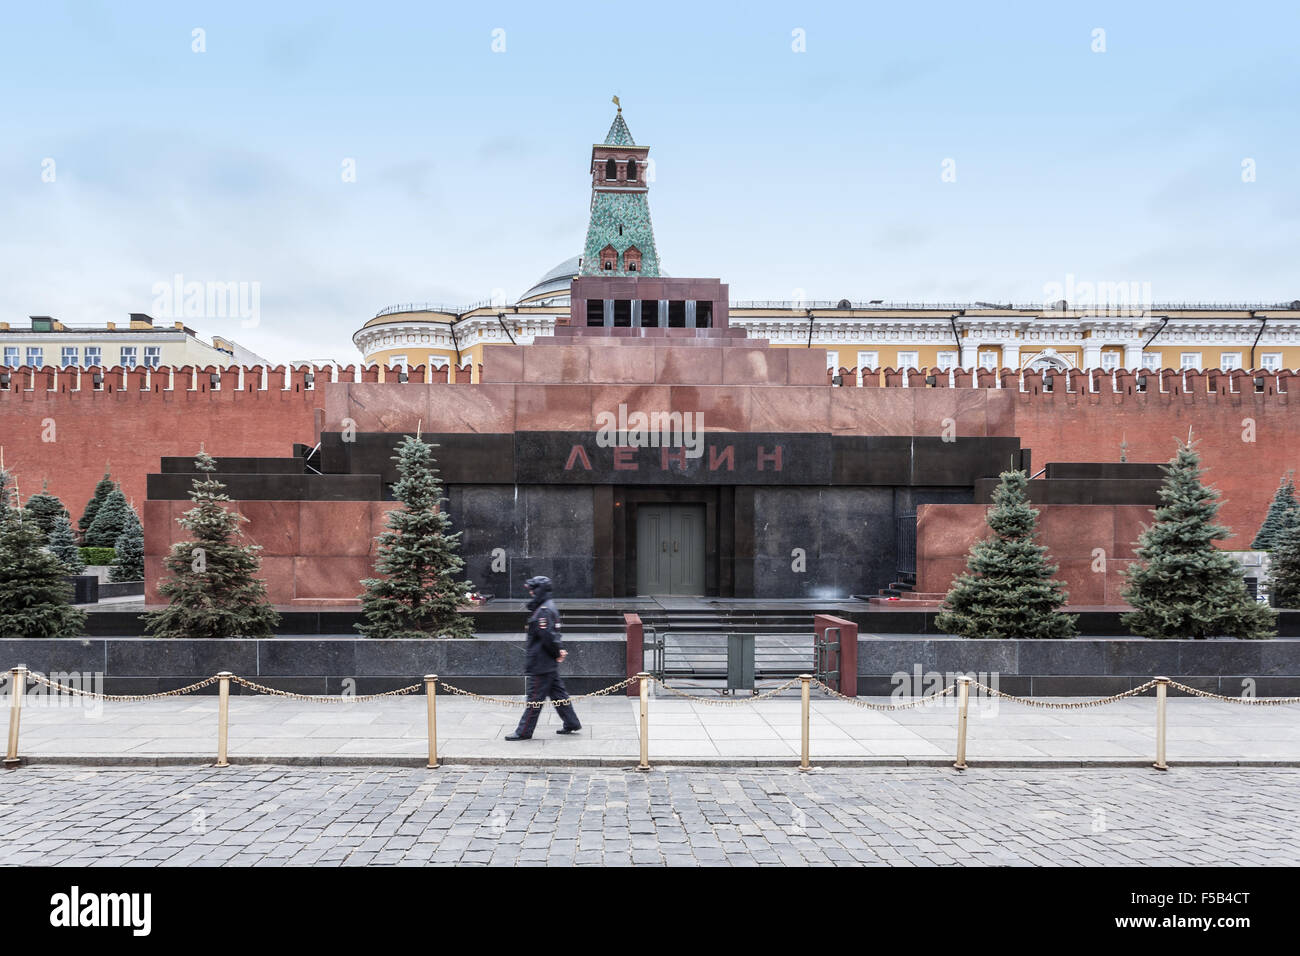 Mosca, Russia - 14 Ottobre 2015: Mosca il Cremlino e la Piazza Rossa. Il mausoleo di Lenin sulla Piazza Rossa e il solitario ufficio di polizia Foto Stock